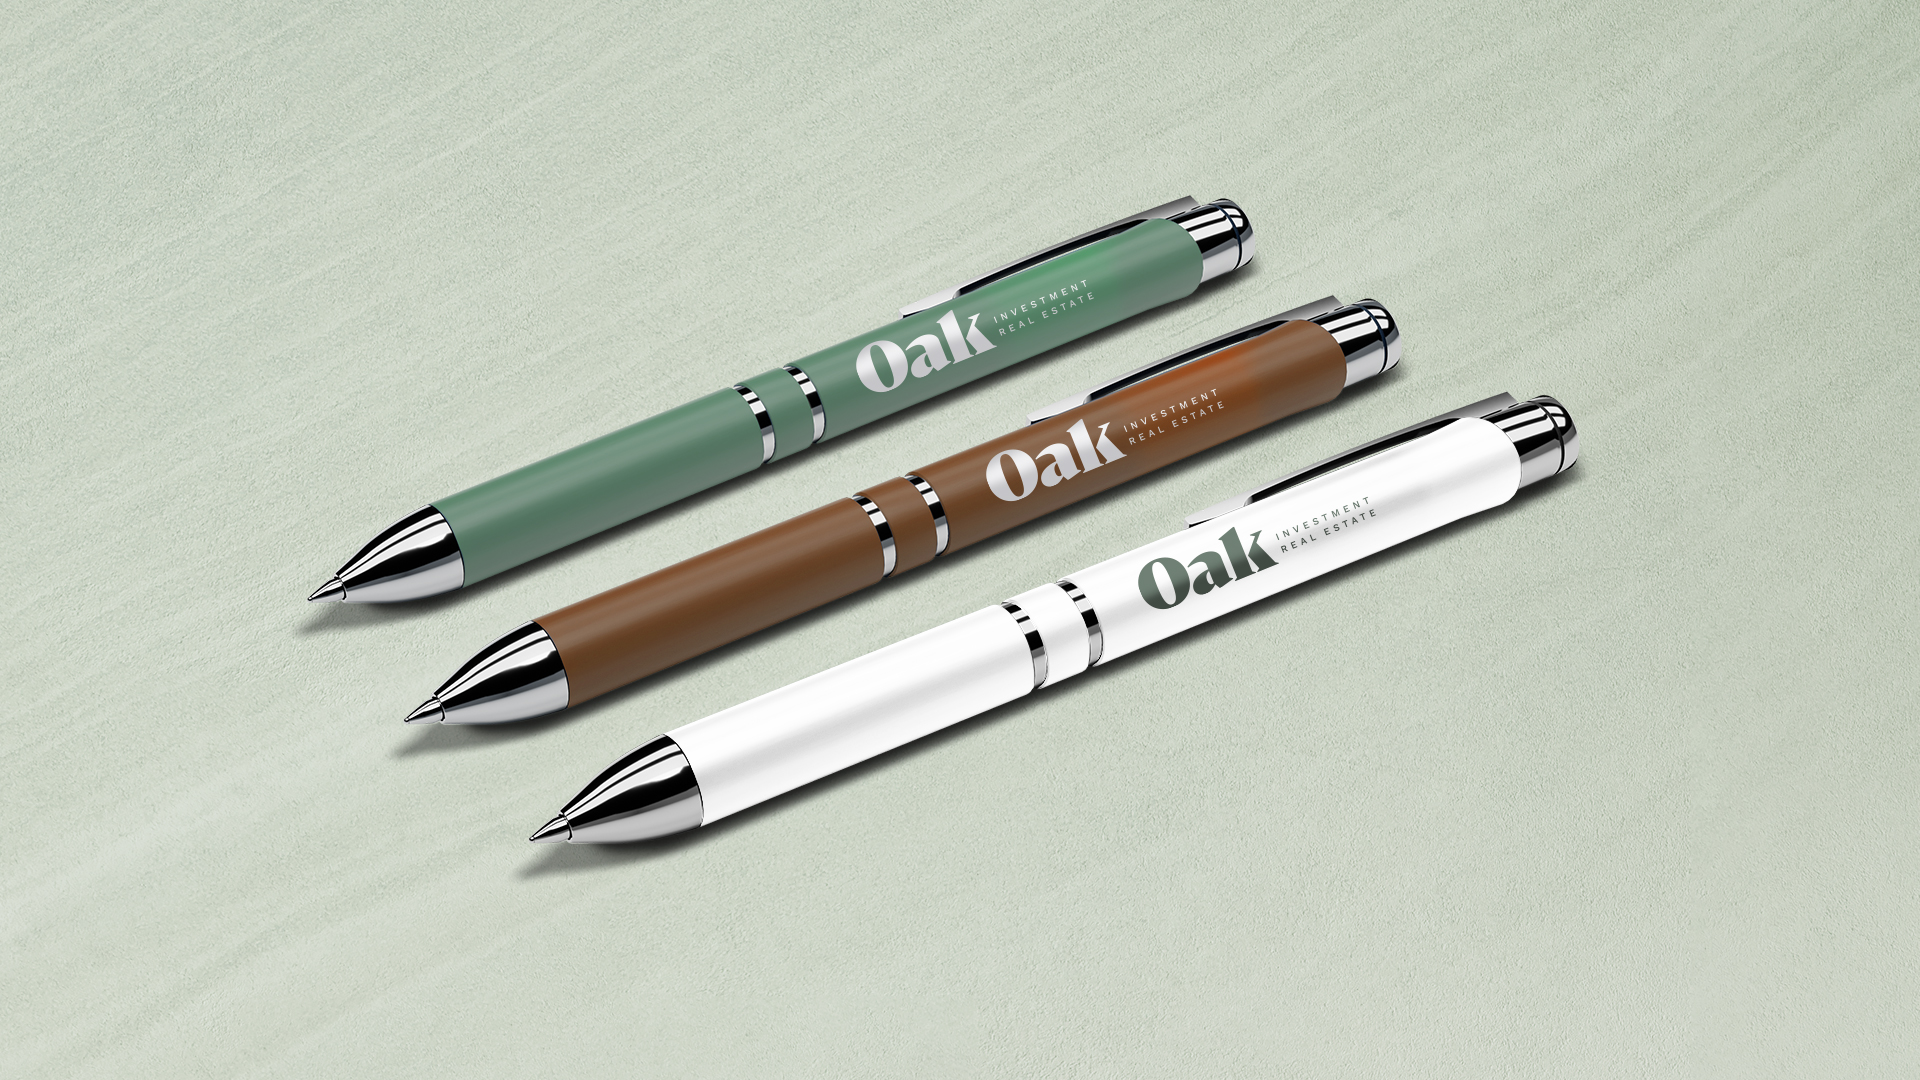 Oak Investment Real Estate Branding: Pens